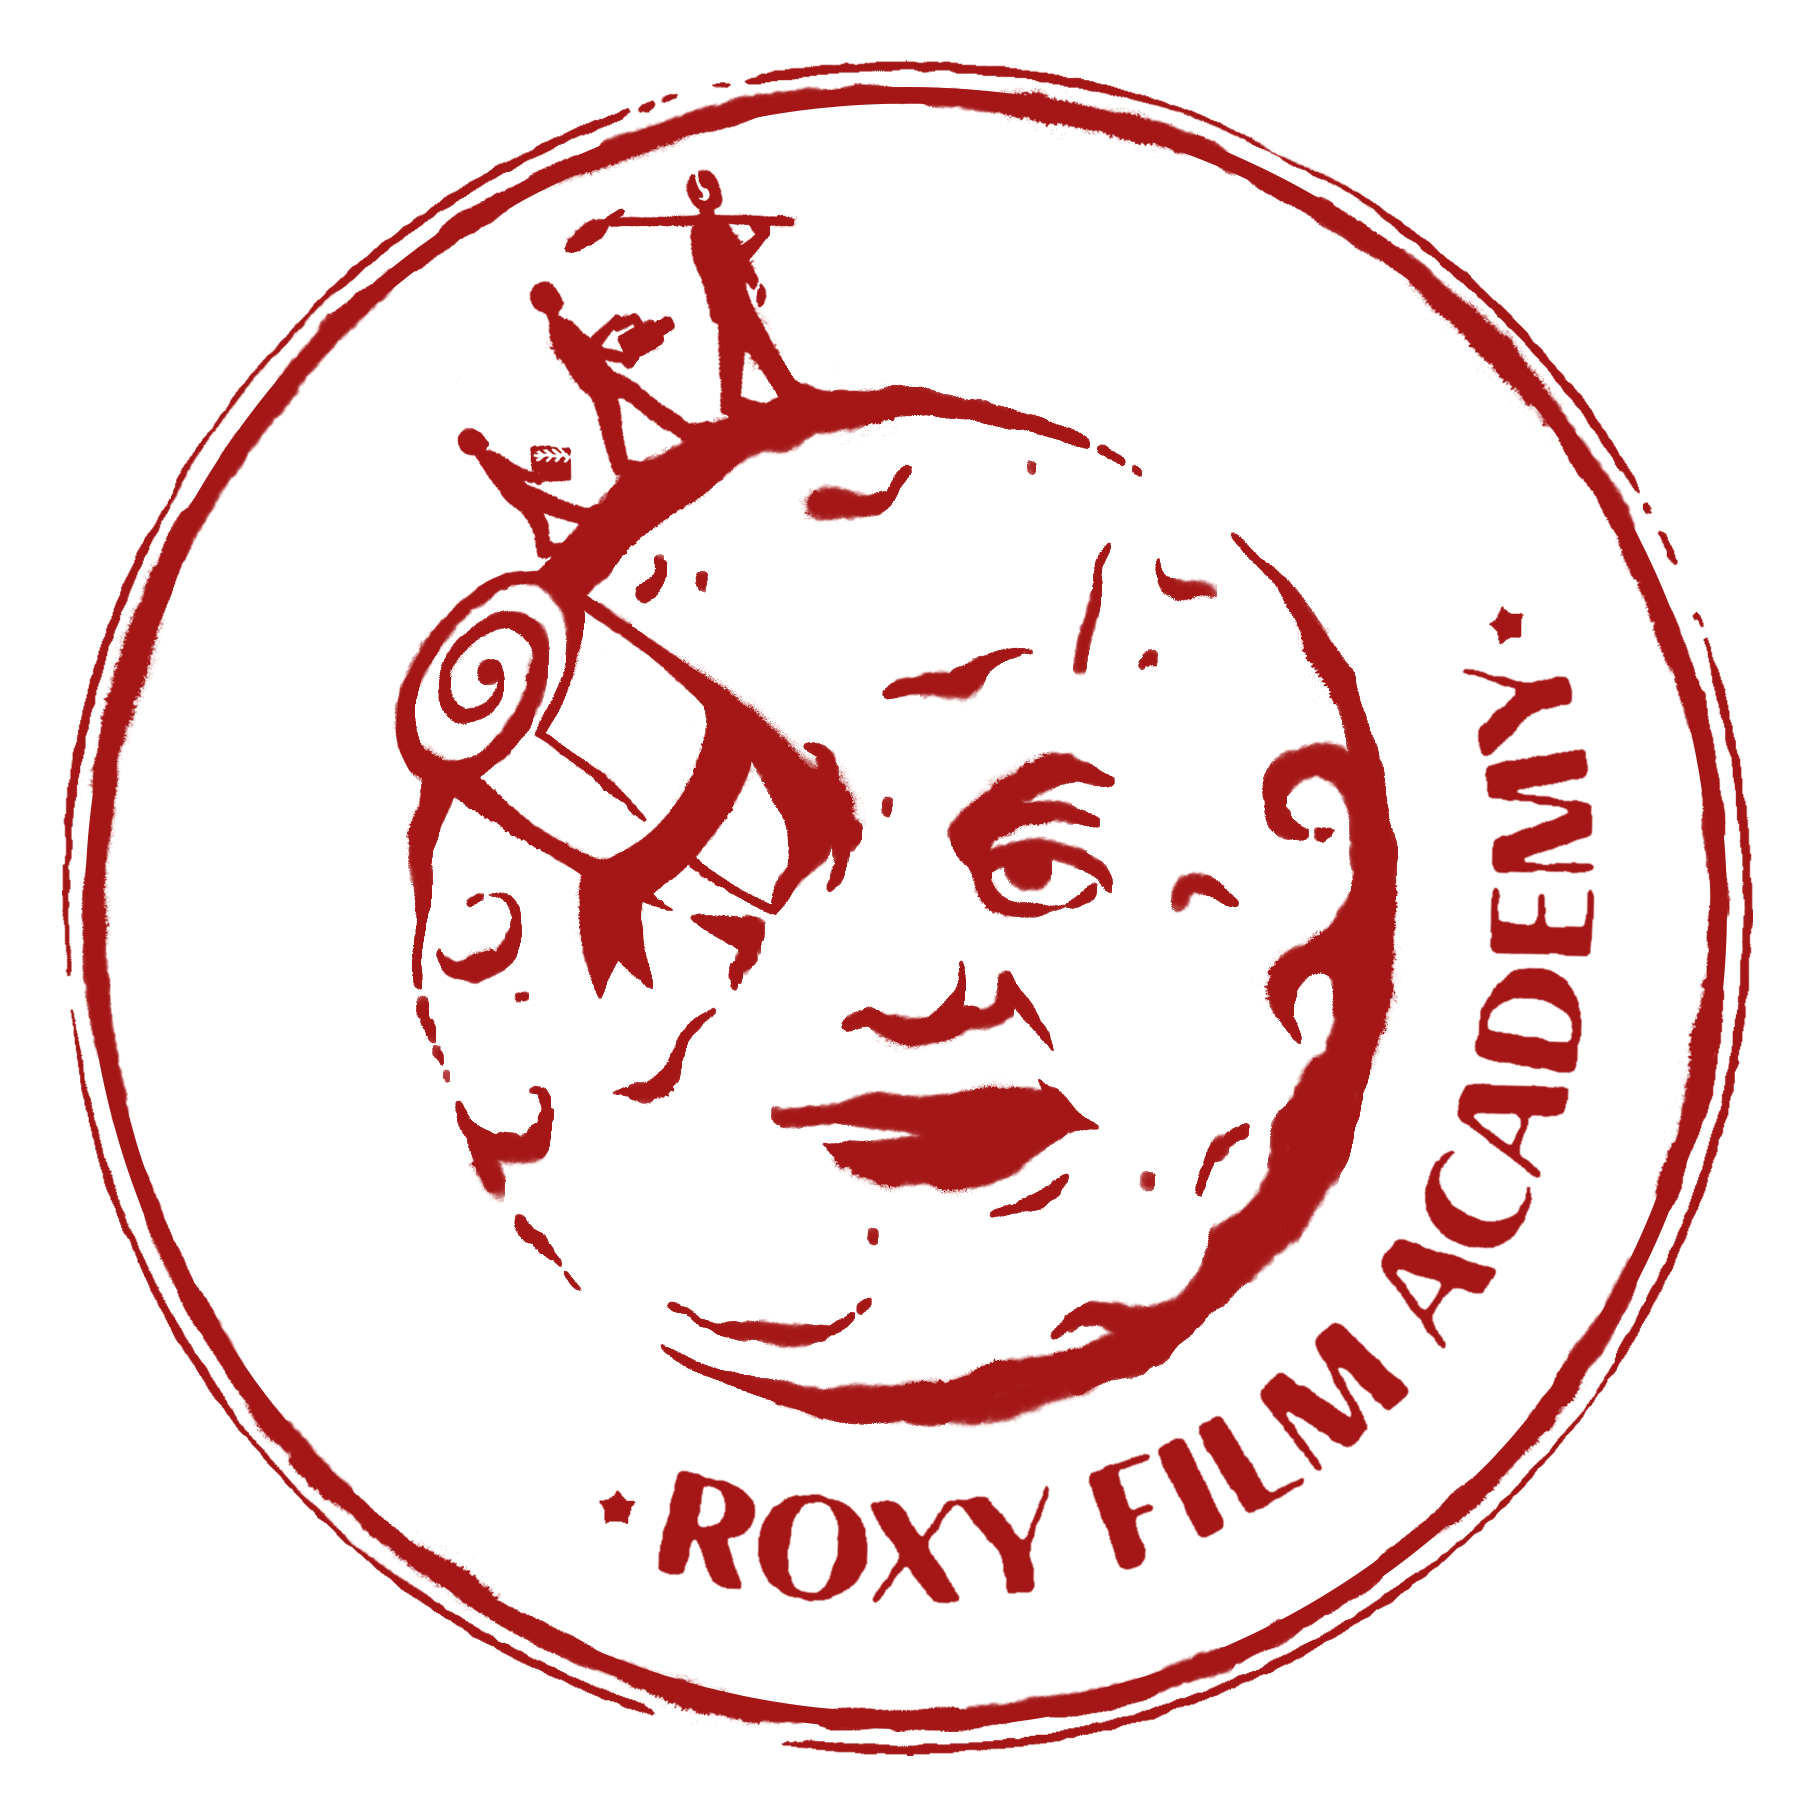 Roxy Film Academy